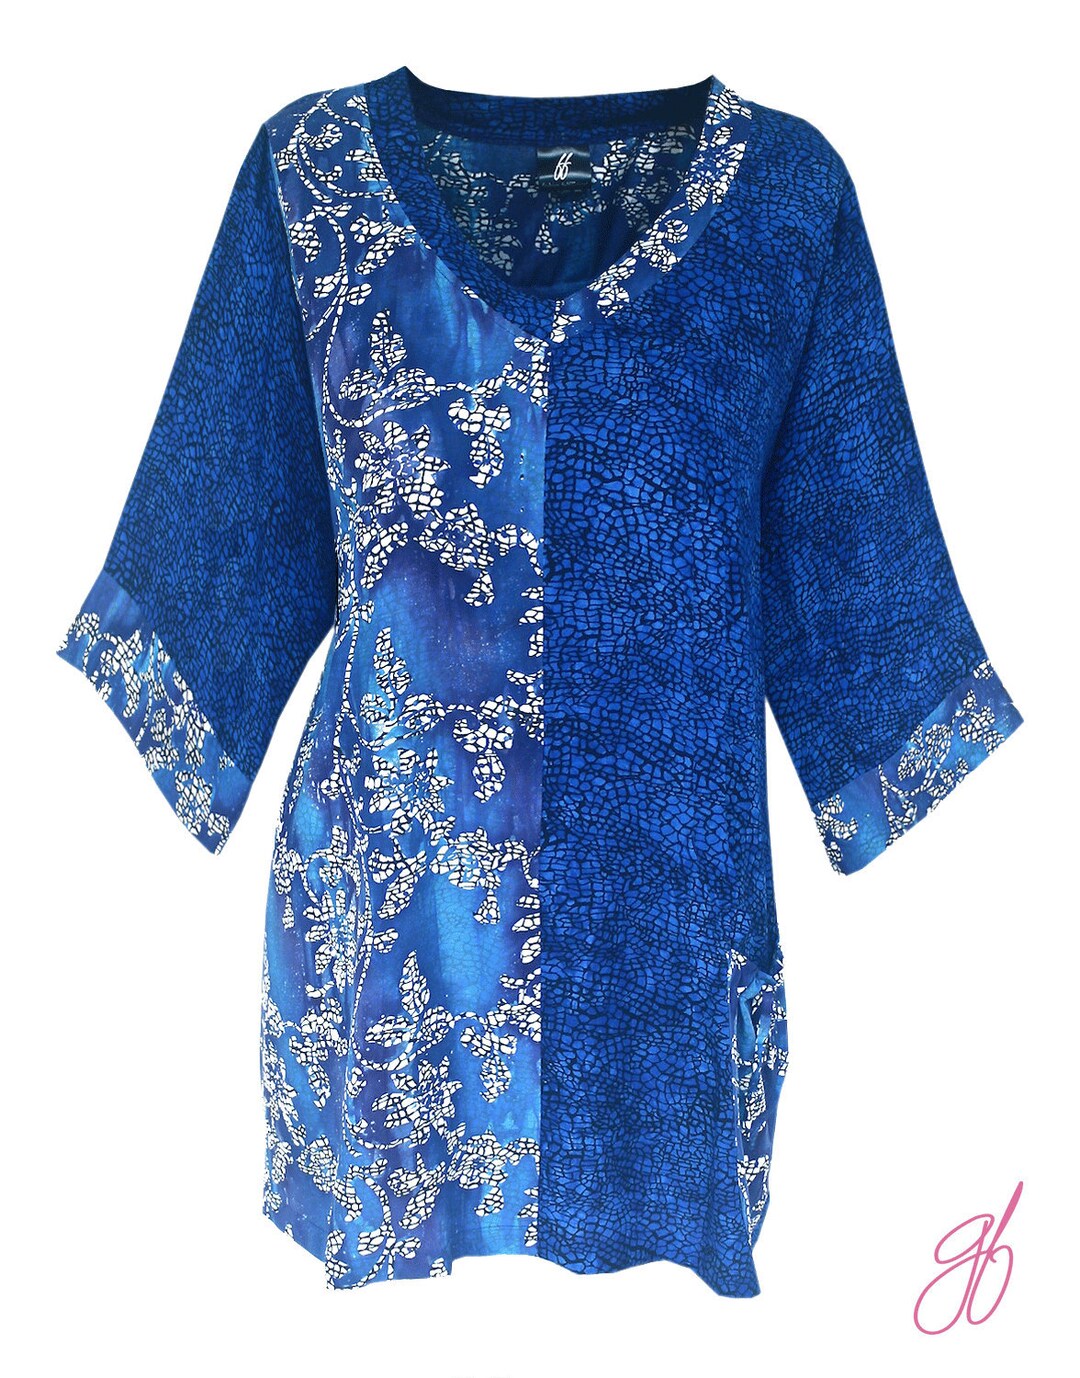 Causal Plus Size Tunic Top XL 1X 2X Women's Batik Blue - Etsy